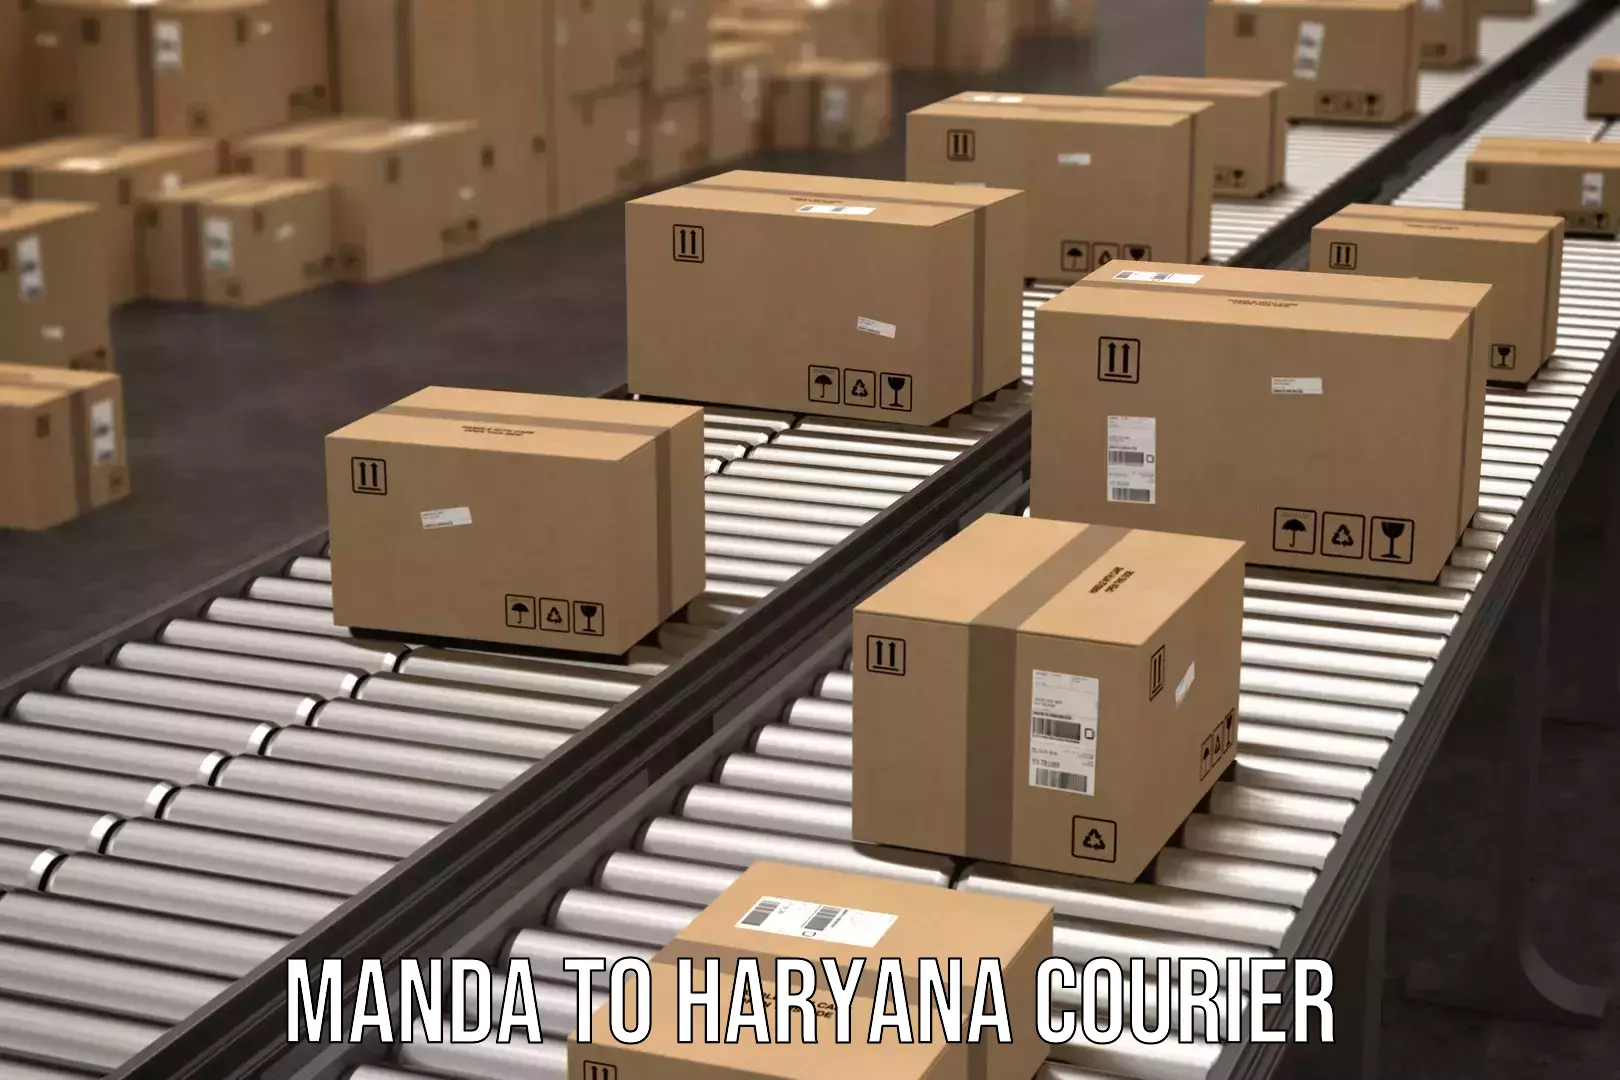 Courier service partnerships Manda to Narwana